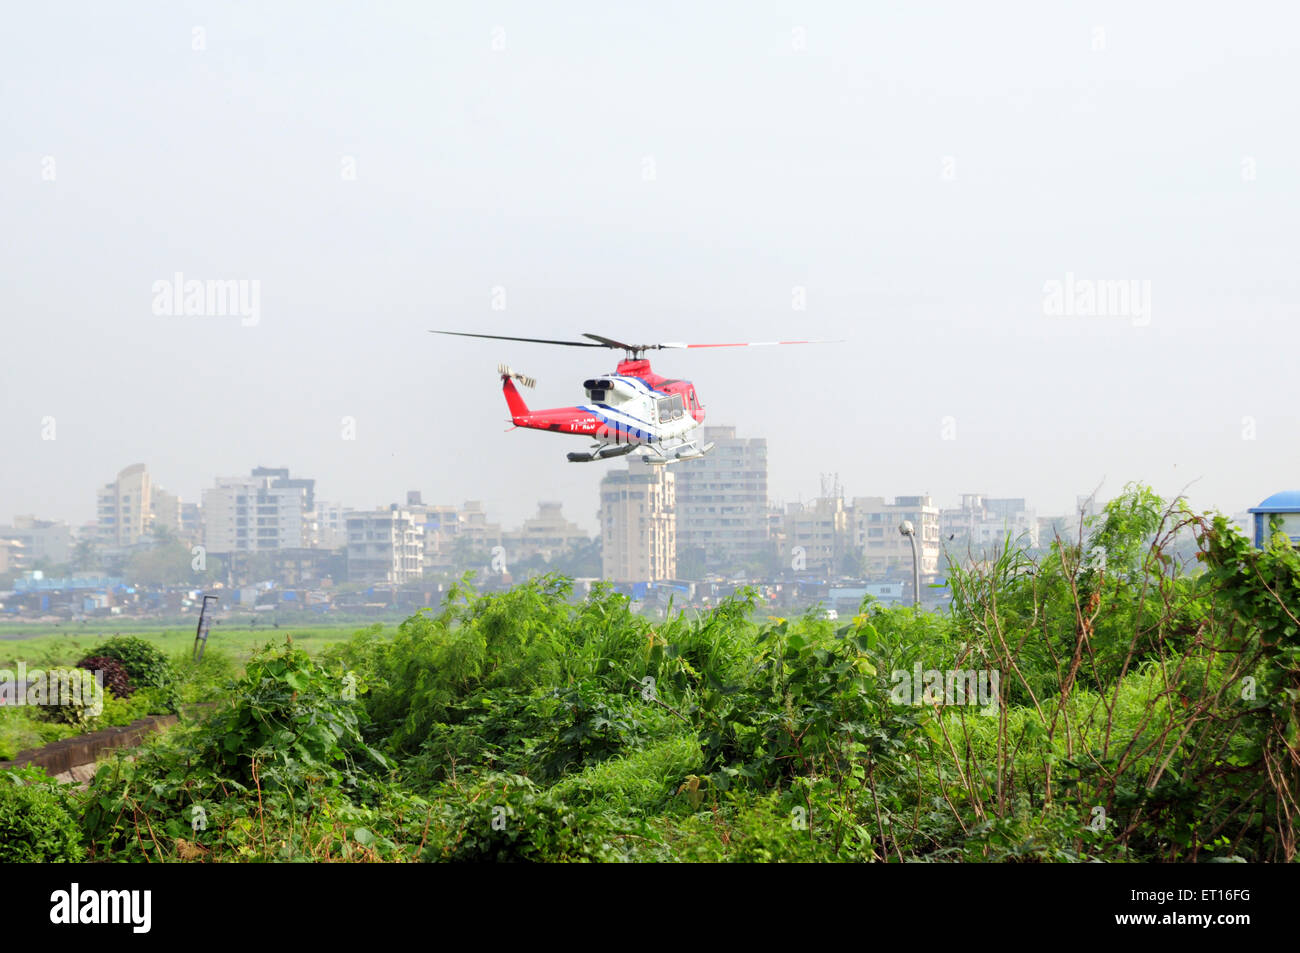 Helikopter abheben, Hubschrauber landen Stockfoto